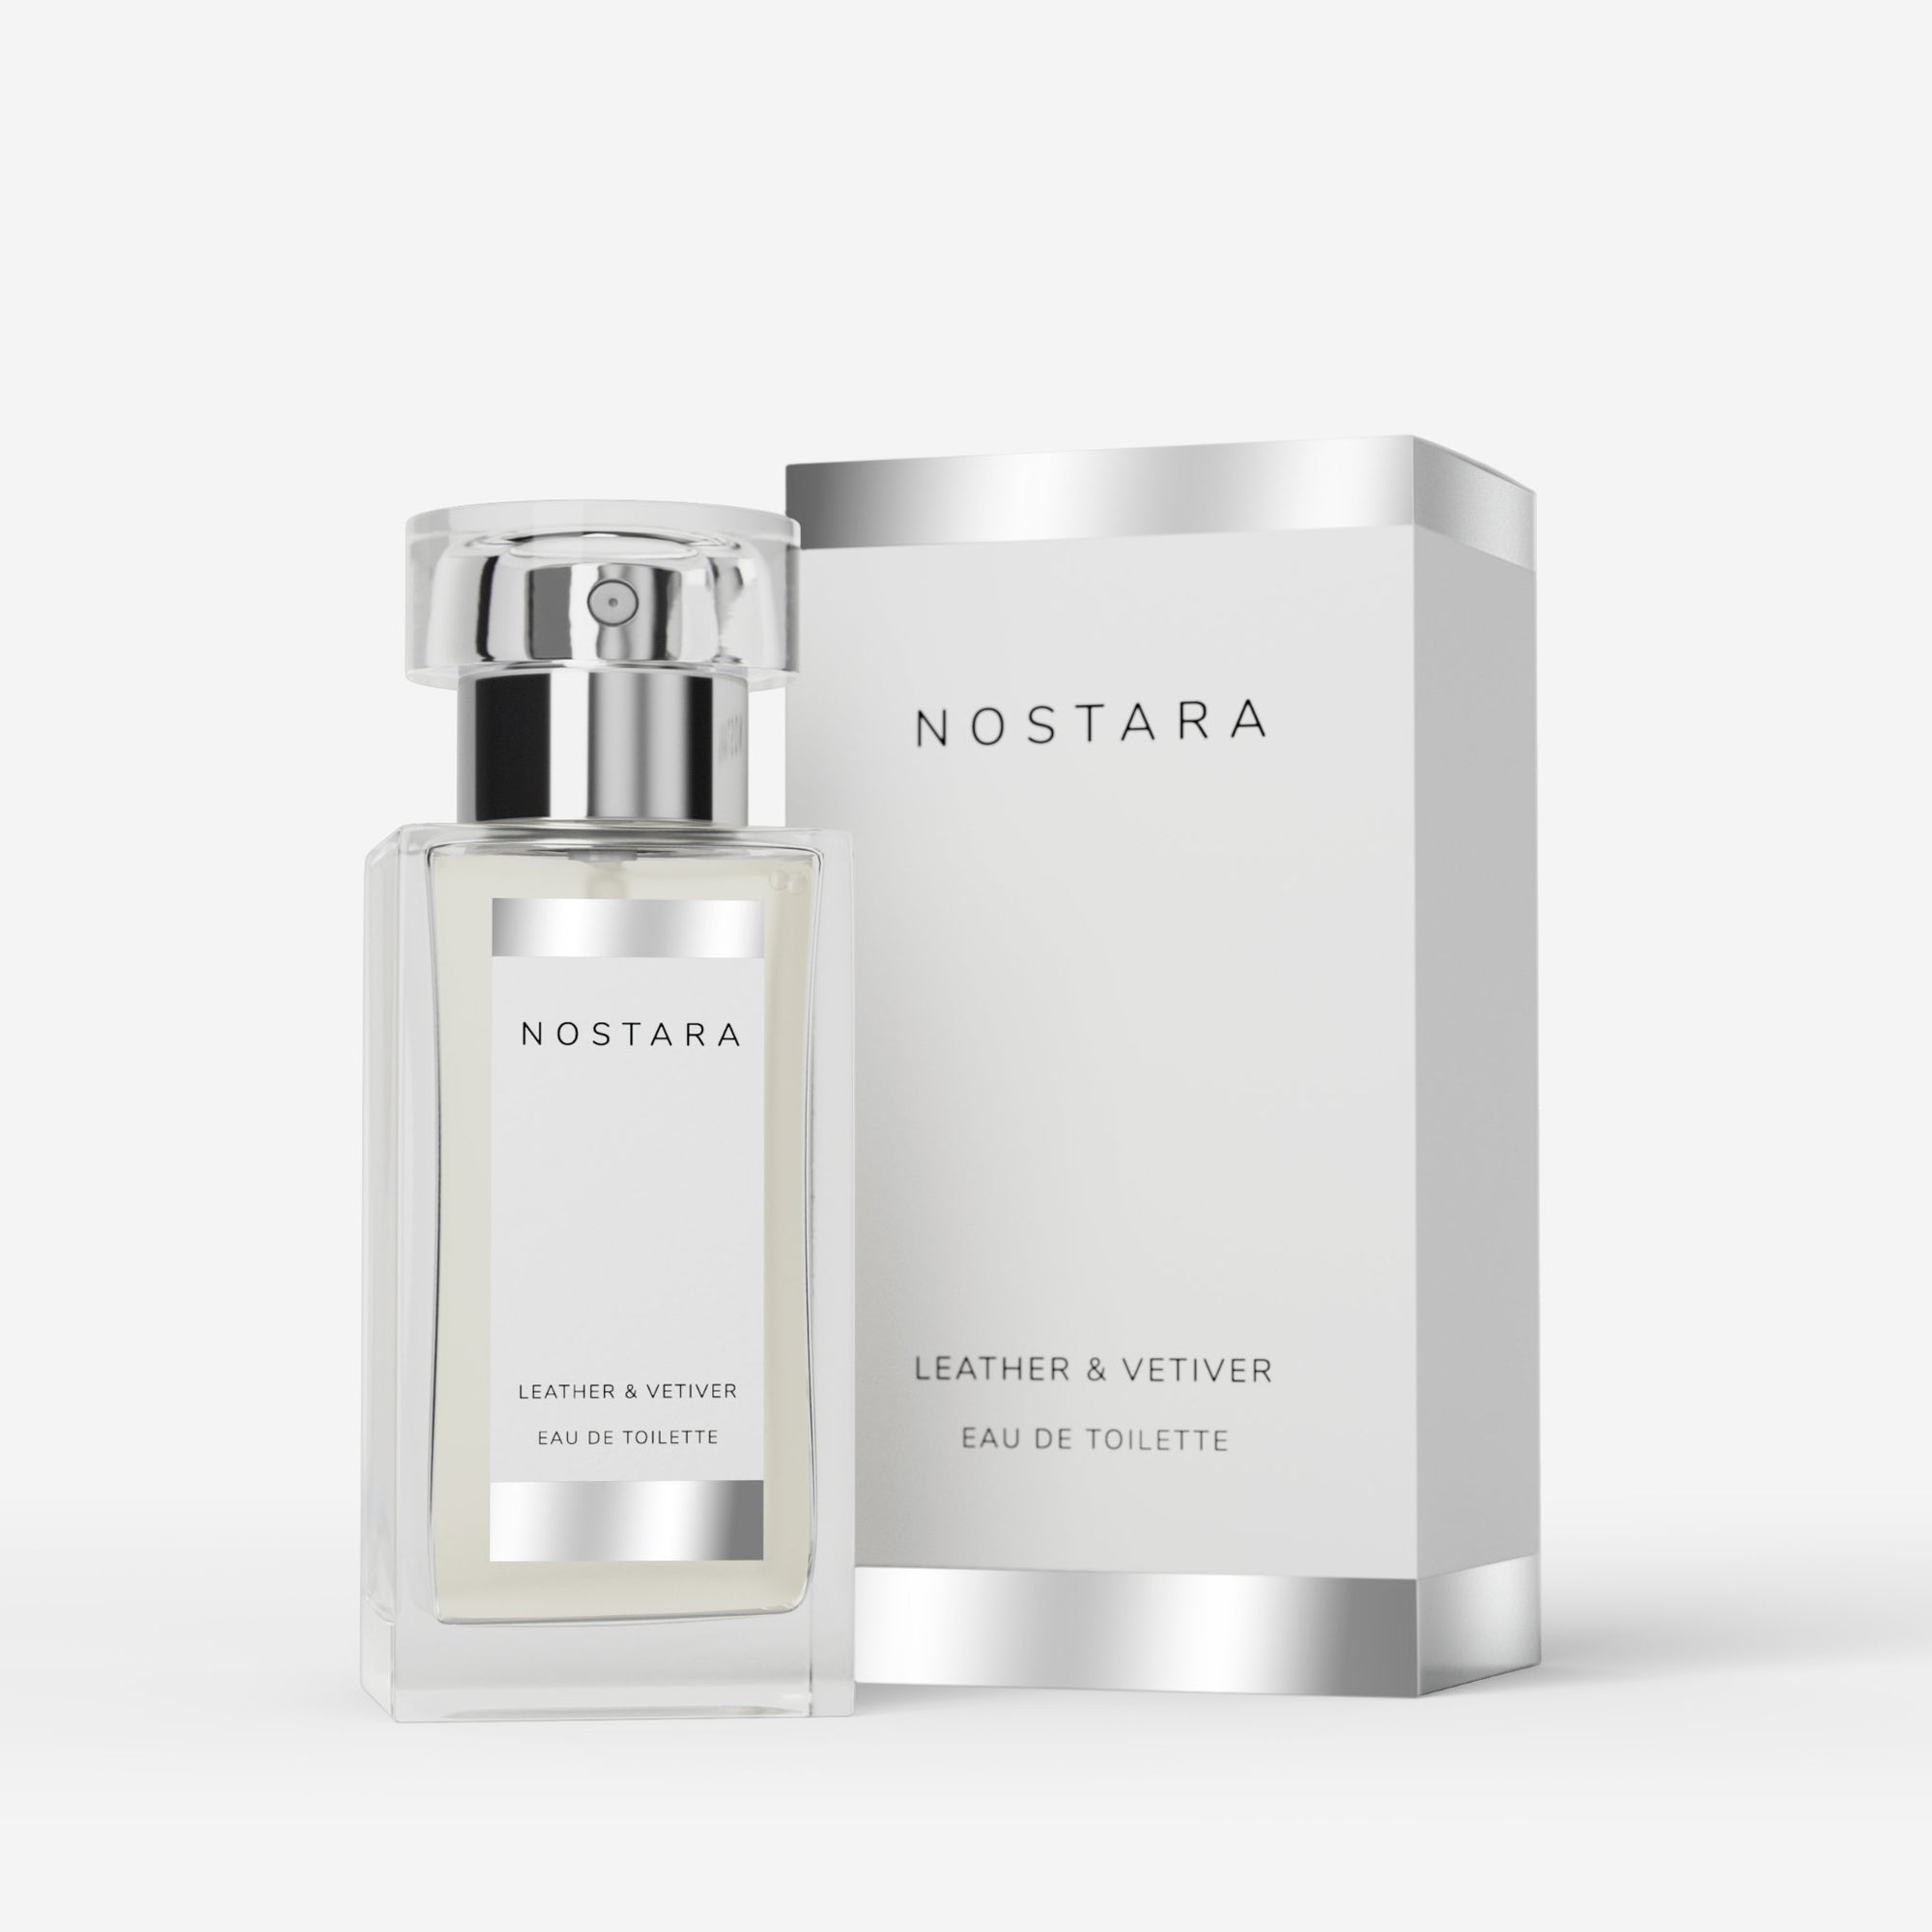 Nostara Leather & Vetiver Eau De Toilette Bottle and Box 